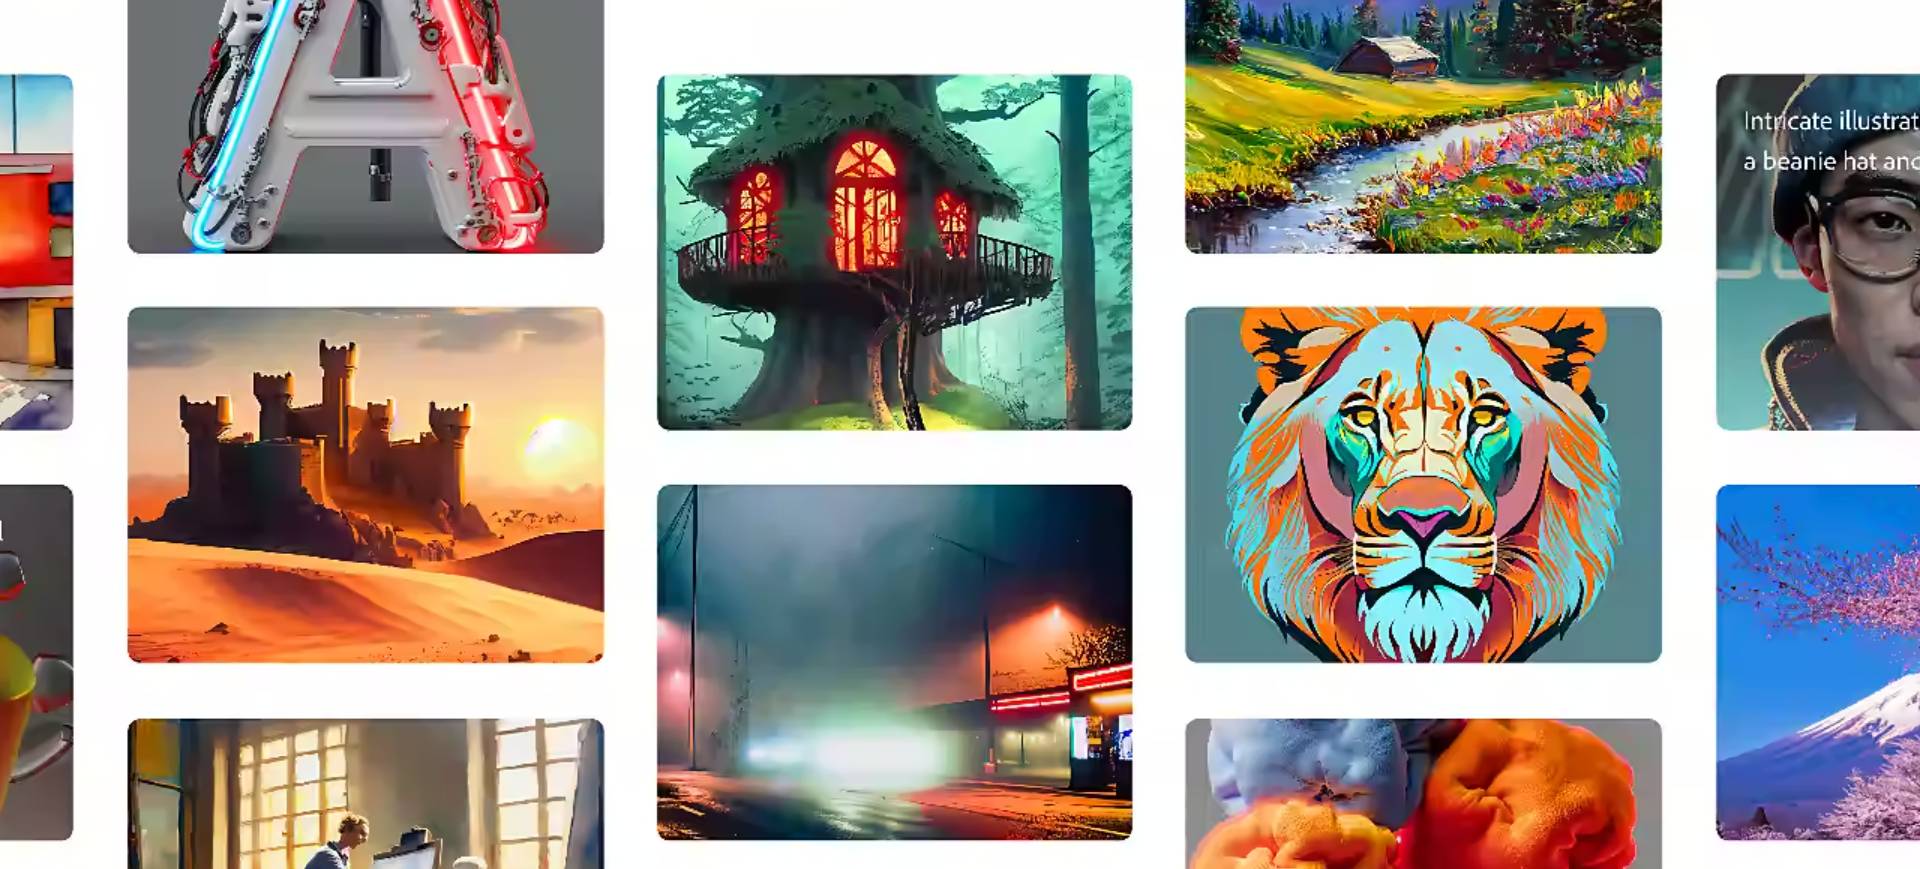 Imagem é uma junção de diversas ilustrações separadas em quadros, cada uma feita por meio do Adobe Firefly: novo pacote de recursos com IA generativa lançada pela Adobe